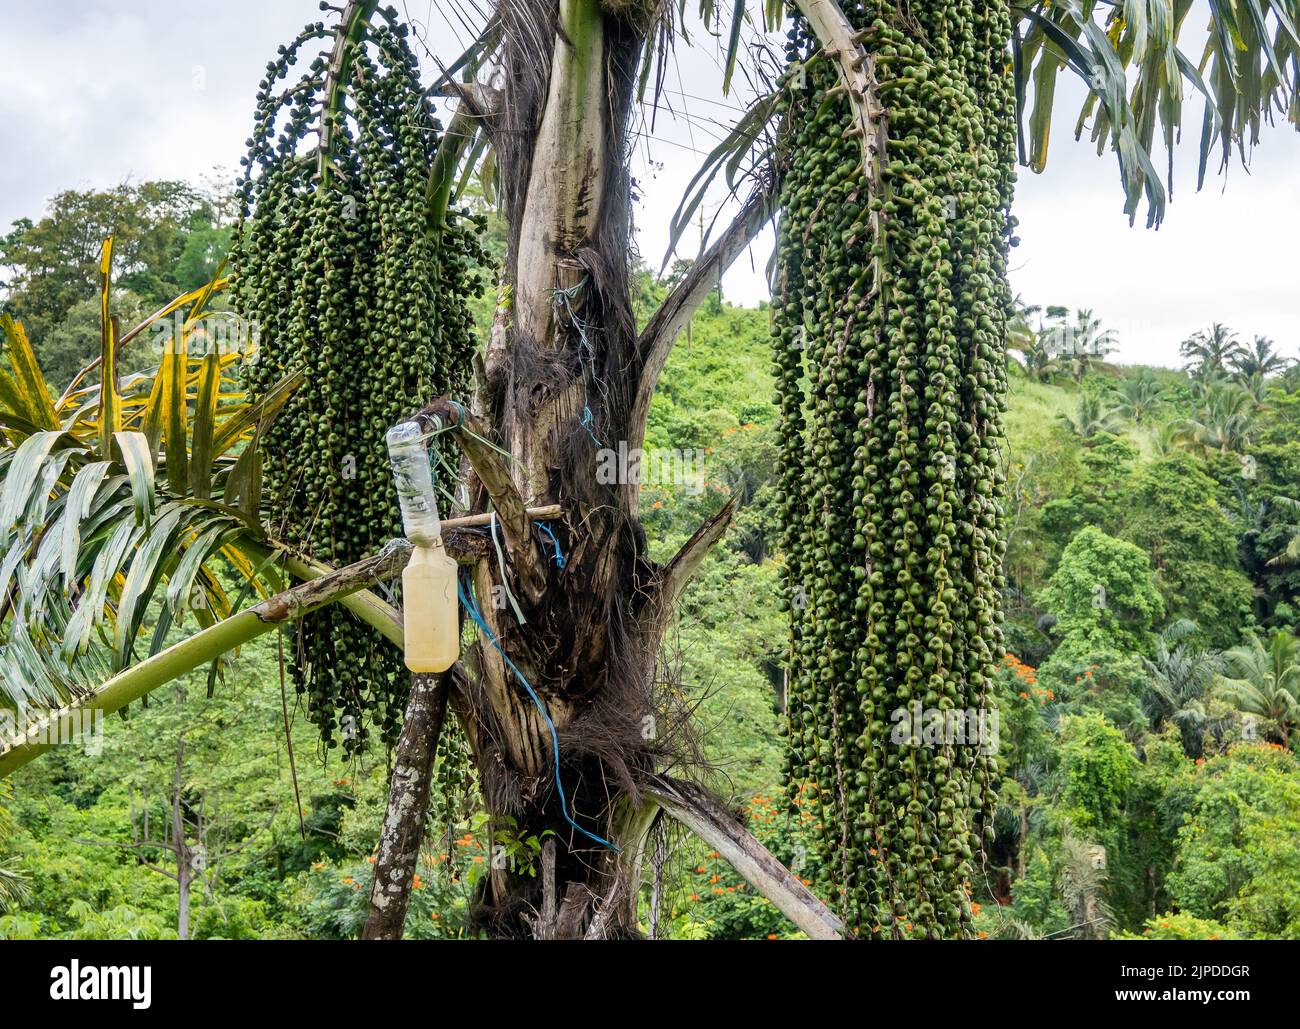 Plastikflasche und Krug werden verwendet, um Saft von der Palme zu sammeln. Sulawesi, Indonesien. Stockfoto